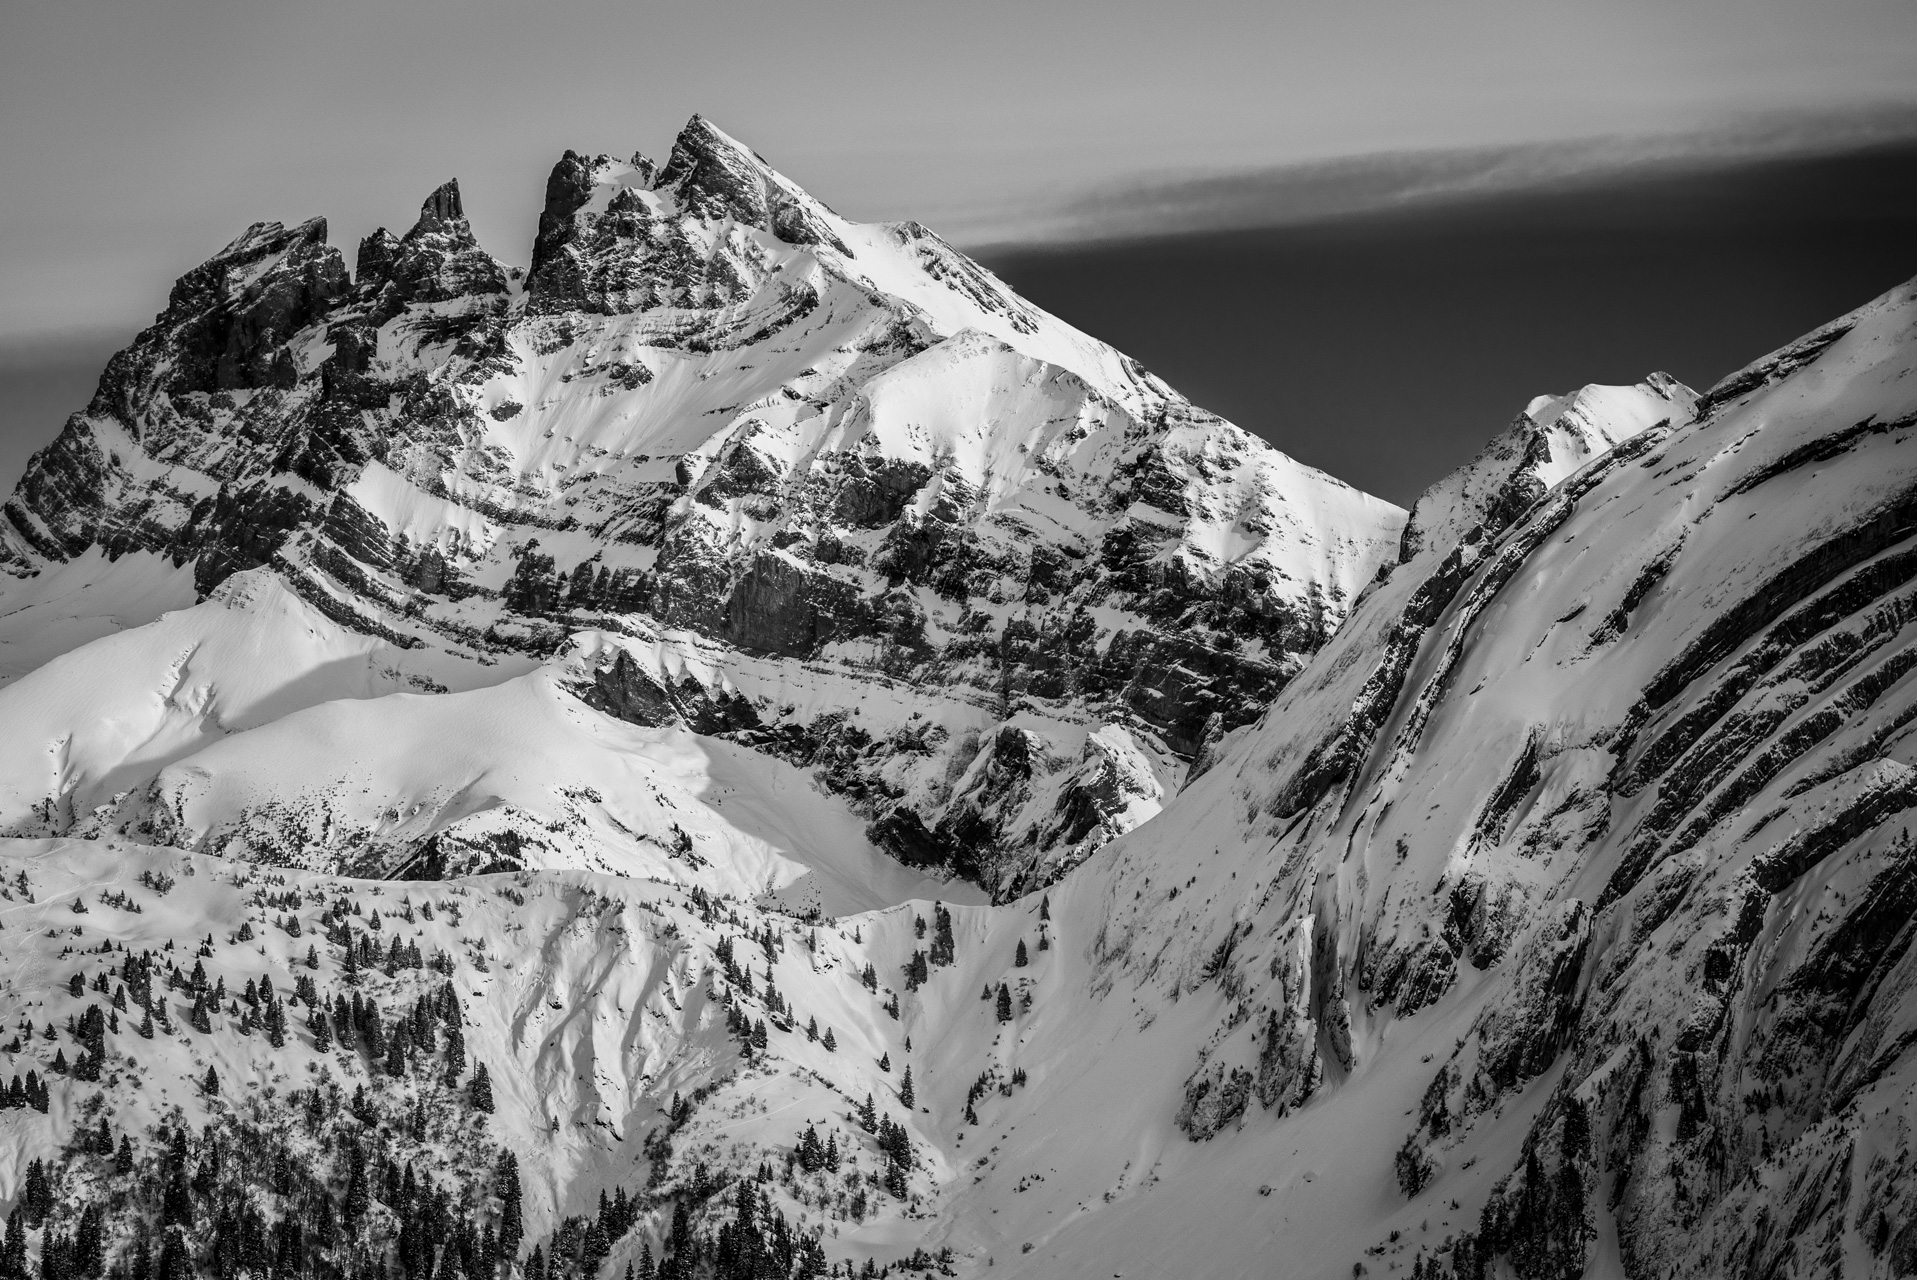 Photo dents du midi noir et blanc - image paysage montagne